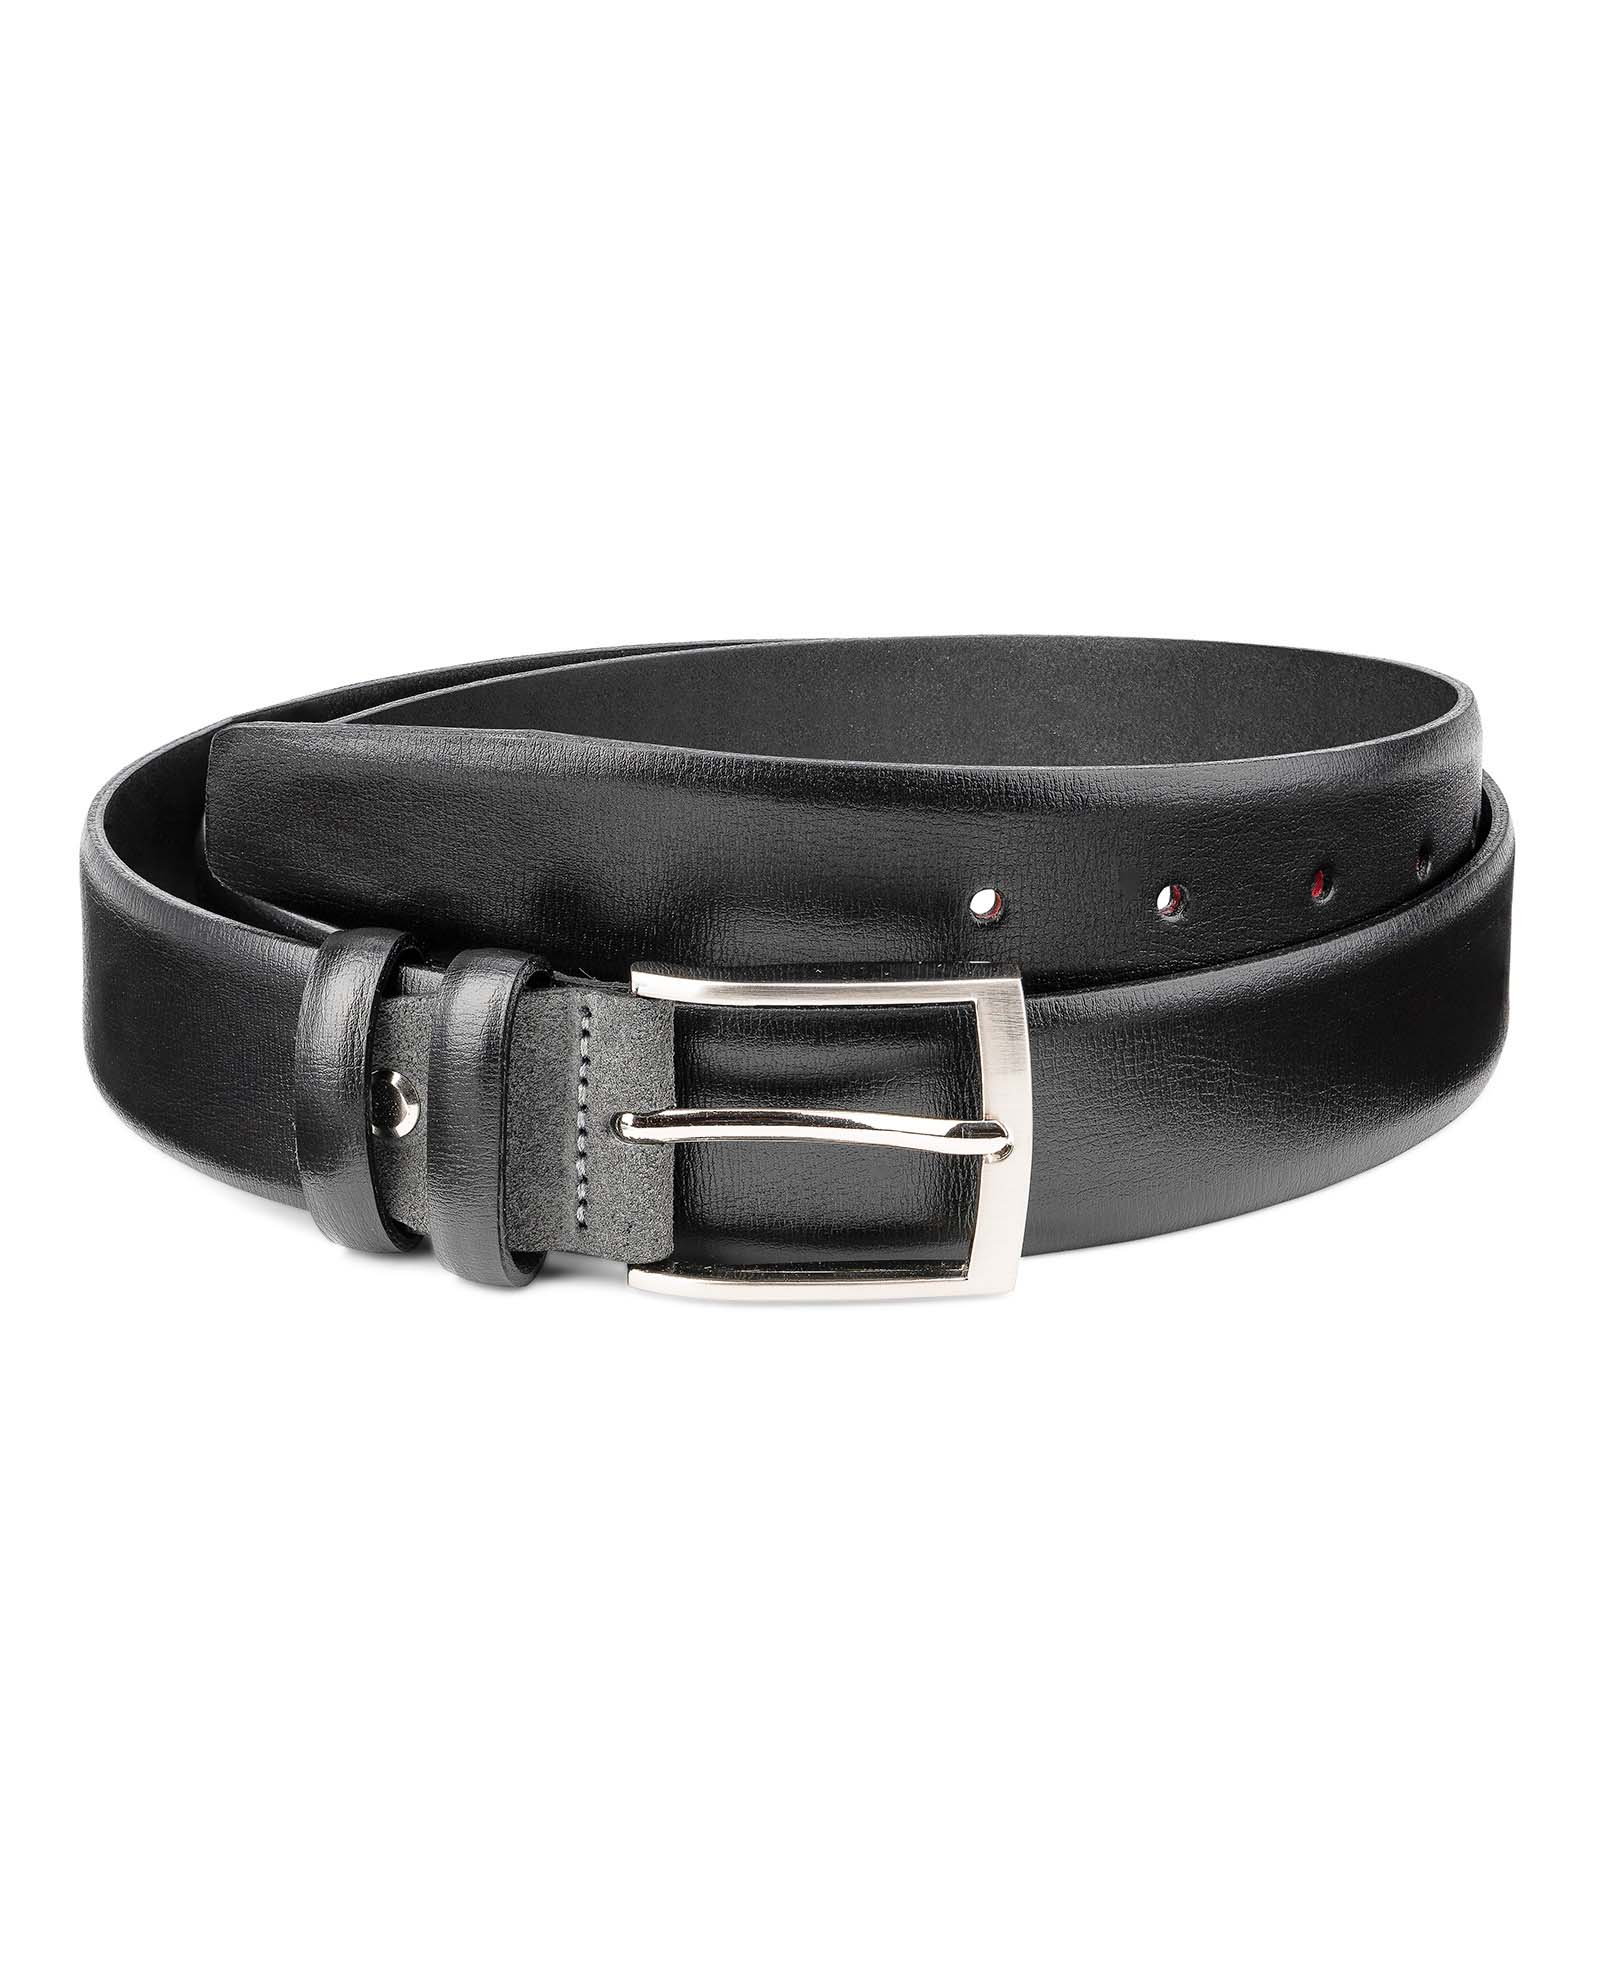 Blue Suede Italian leather belt Men's belts online Custom buckle by Capo Pelle